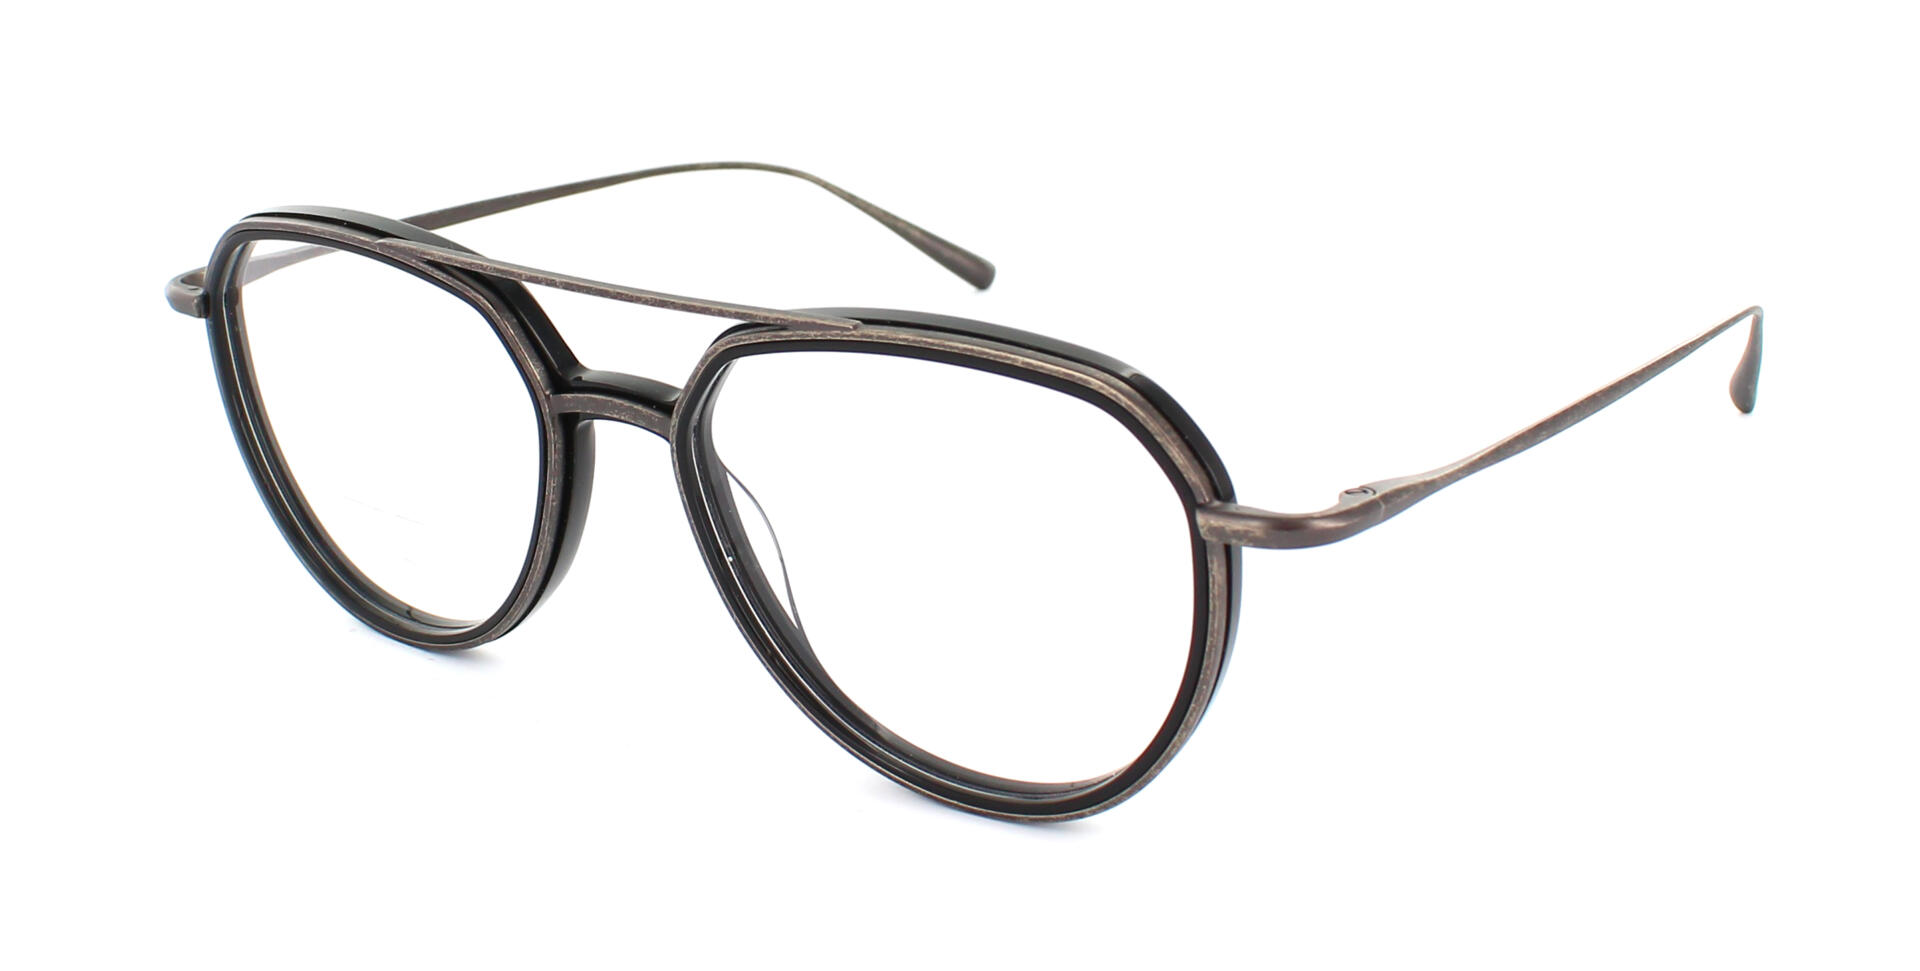 Beitragsbild zu “Brett Eyewear: Die neue Brillenkollektion für Bad Boys & Gentlemen”